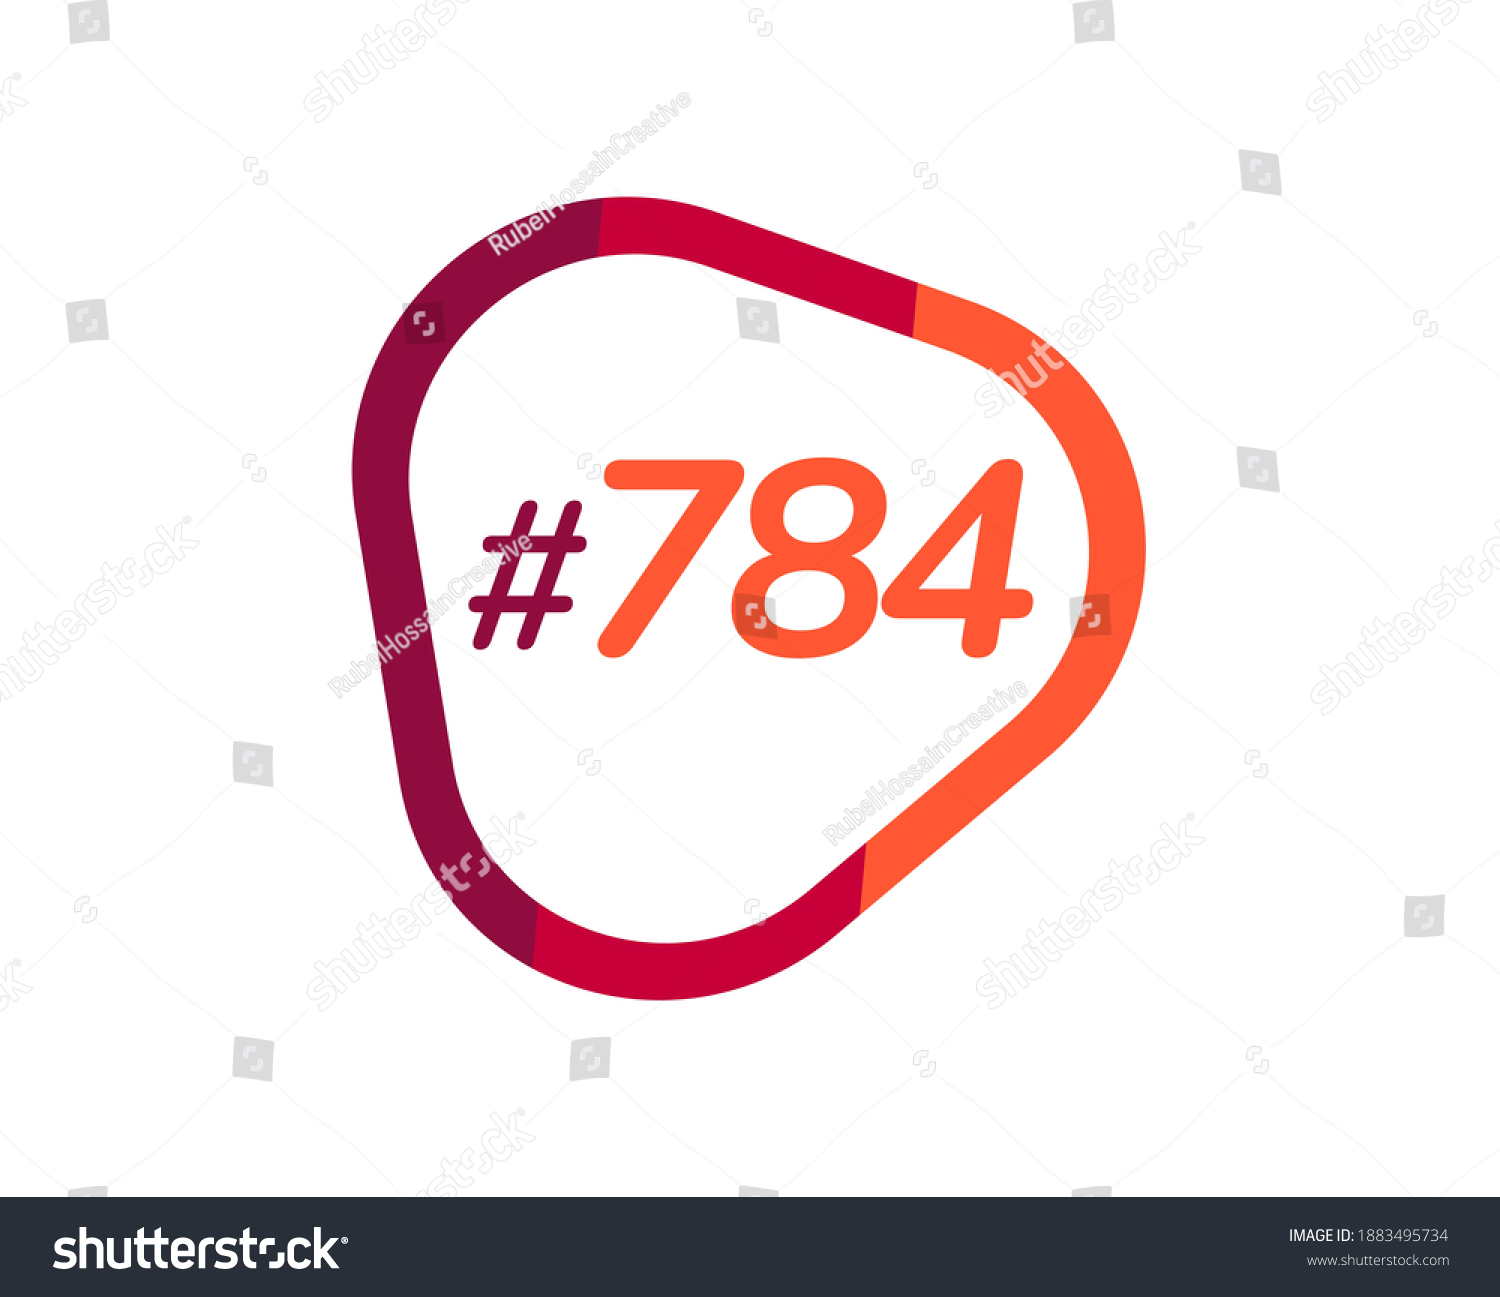 SVG of Number 784 image design, 784 logos svg